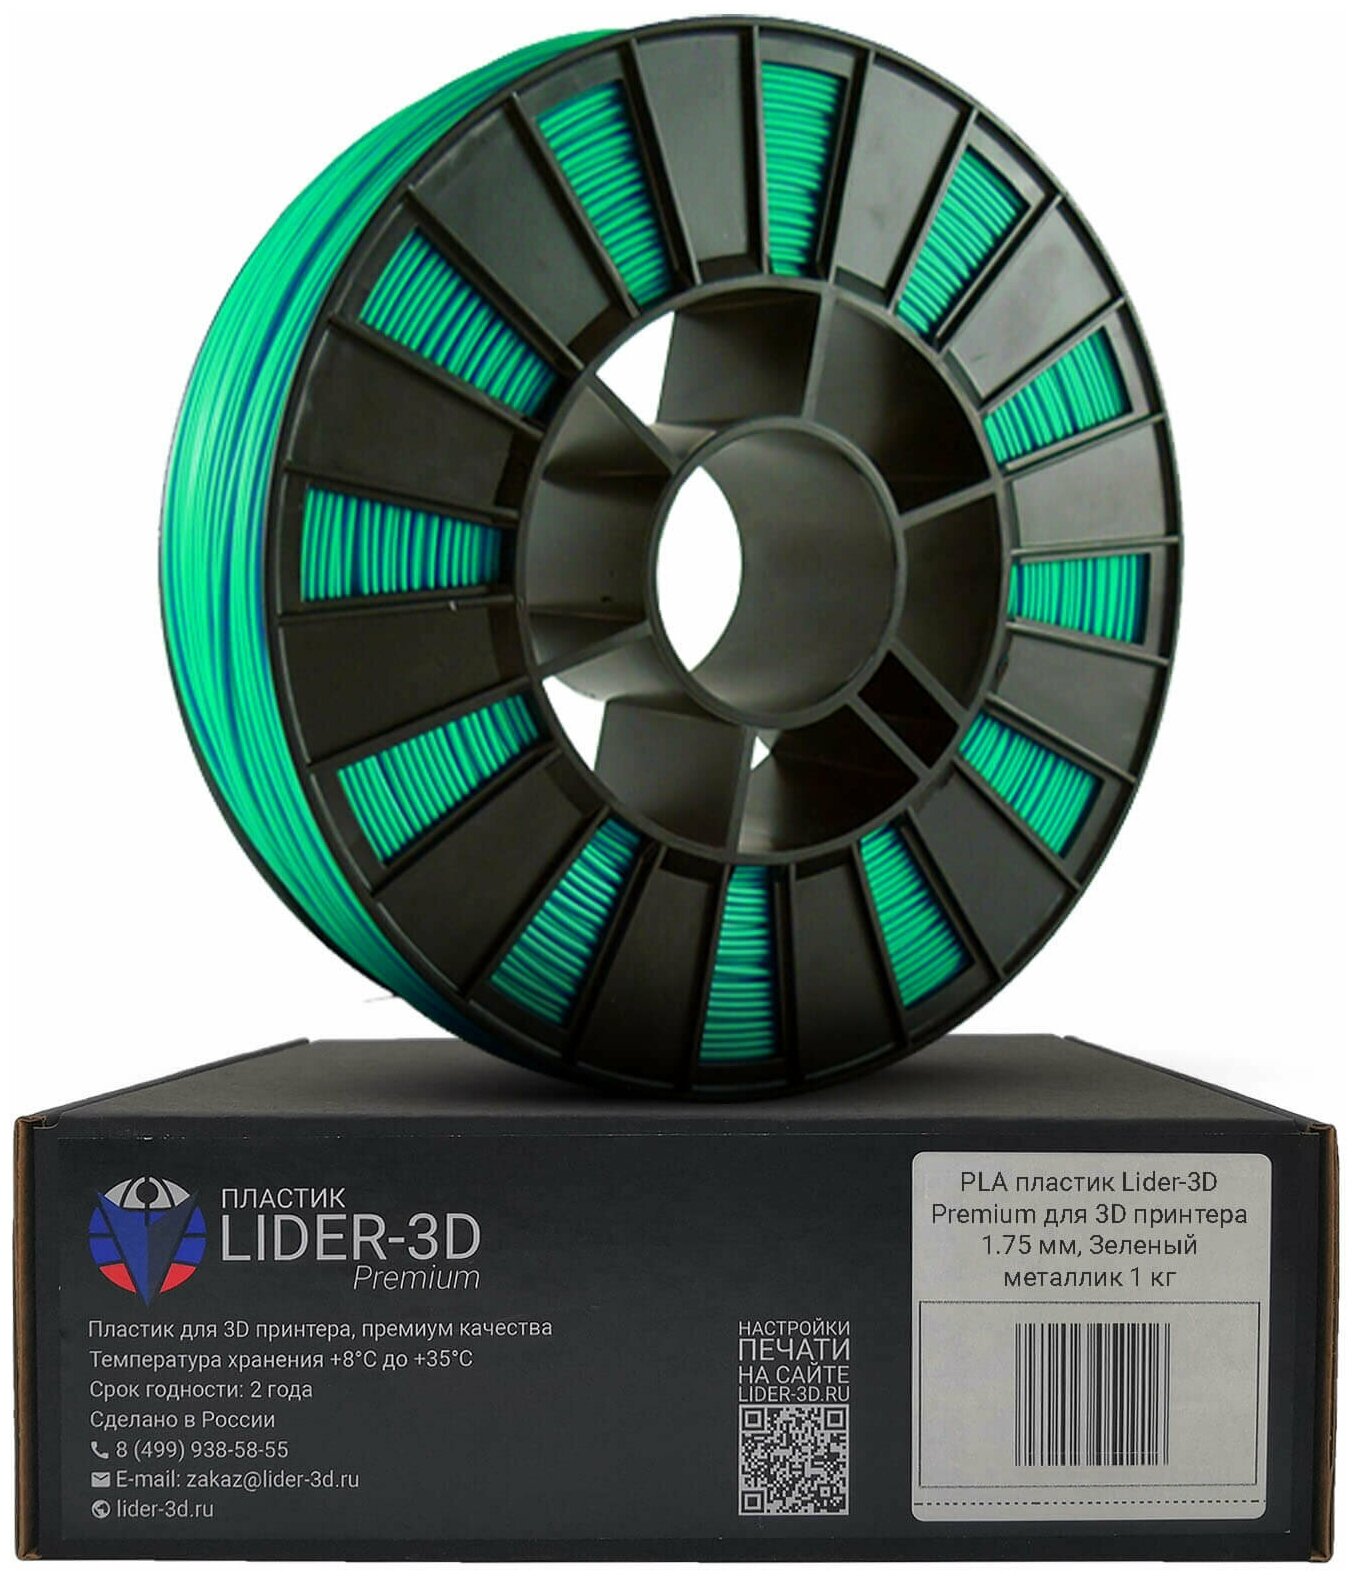 PLA пластик LIDER-3D Premium для 3D принтера 1.75 мм, Зелёный металлик, 1 кг